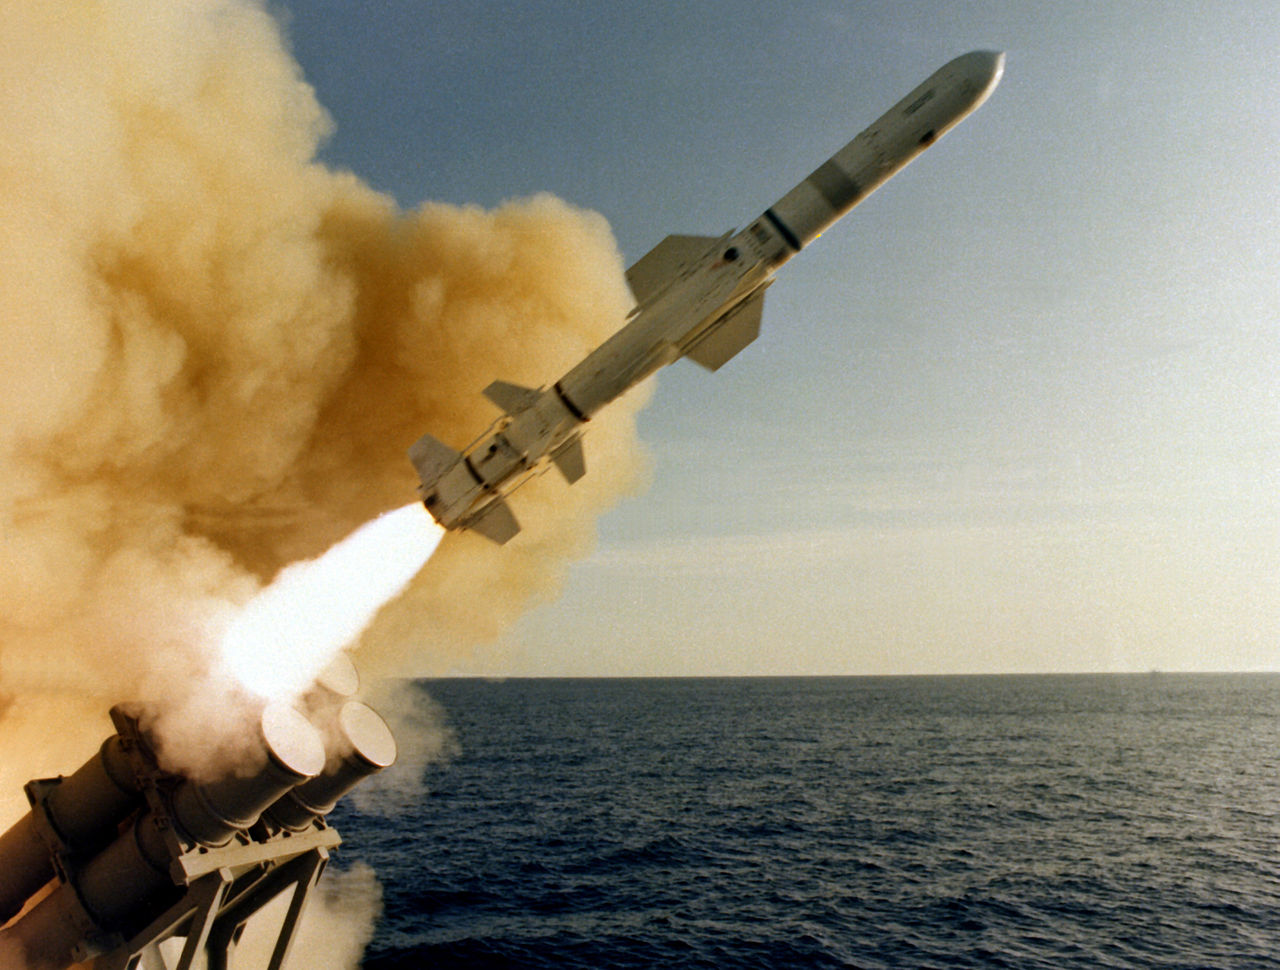 RGM-84 Harpoon, amerikai hajók elleni, irányított rakéta. Forrás: Wikipédia